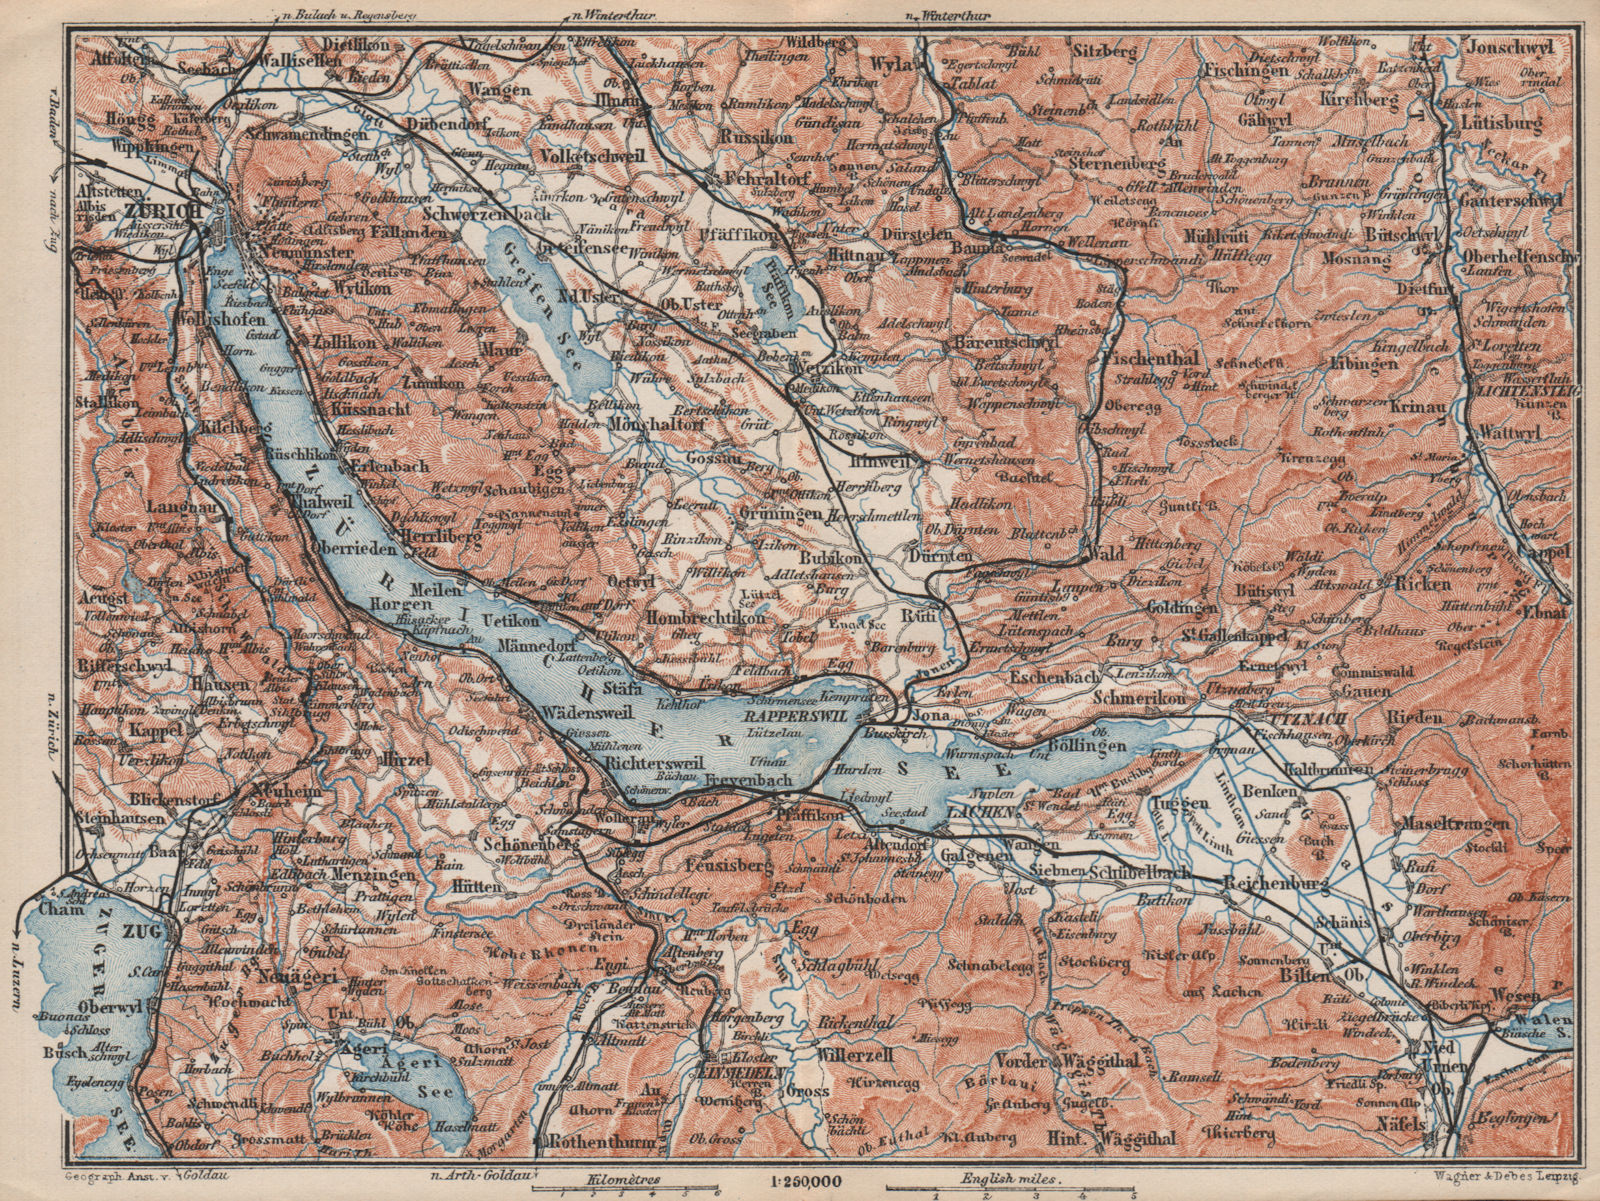 Associate Product LAKE ZÜRICH. Zuricher See Lachen Utznach.Topo-map. Switzerland Schweiz 1897